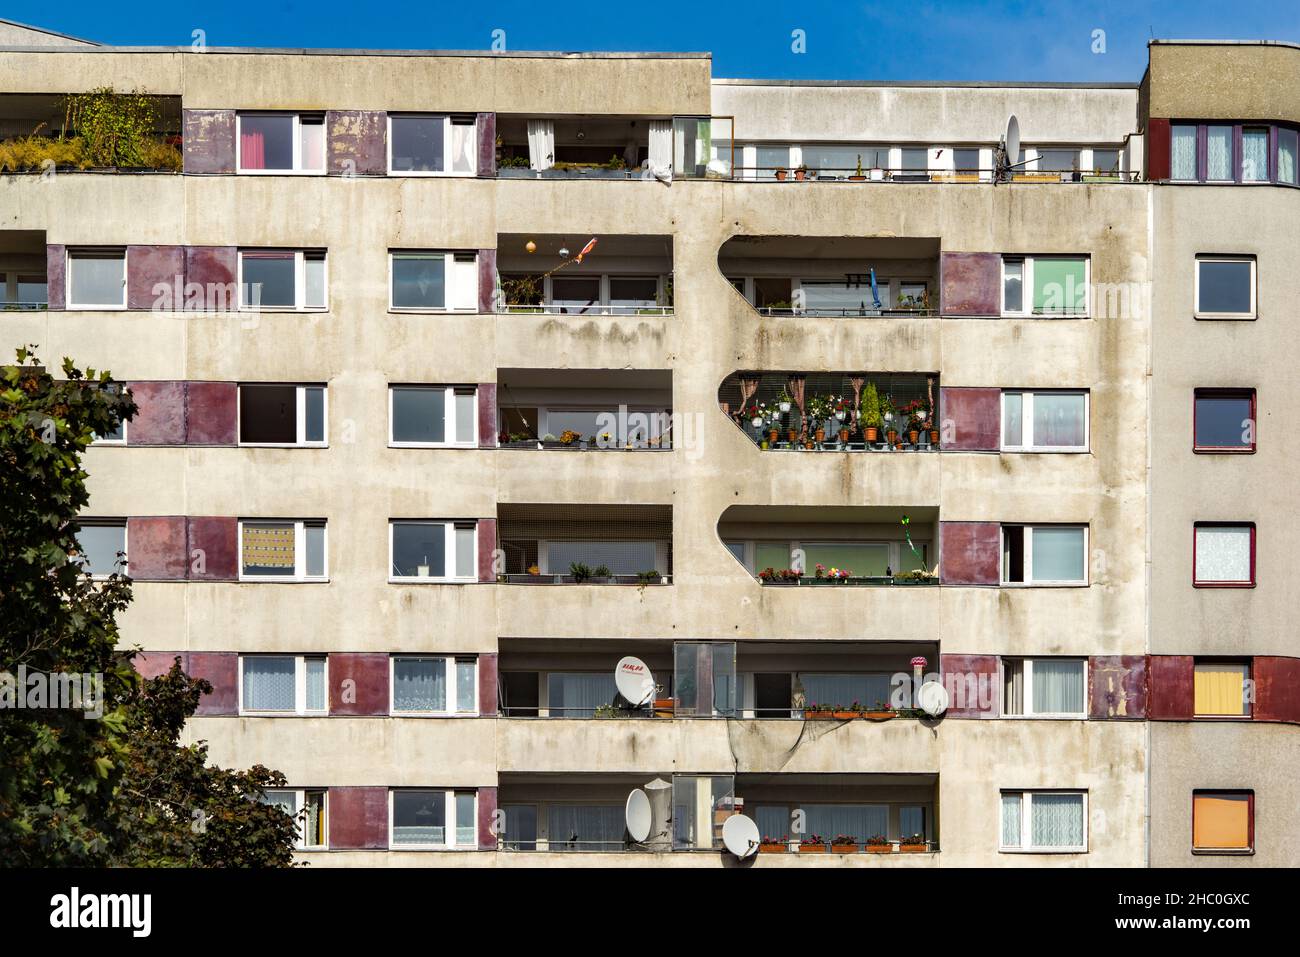 Housing etate near Kottbusser Tor, Berlin Stock Photo